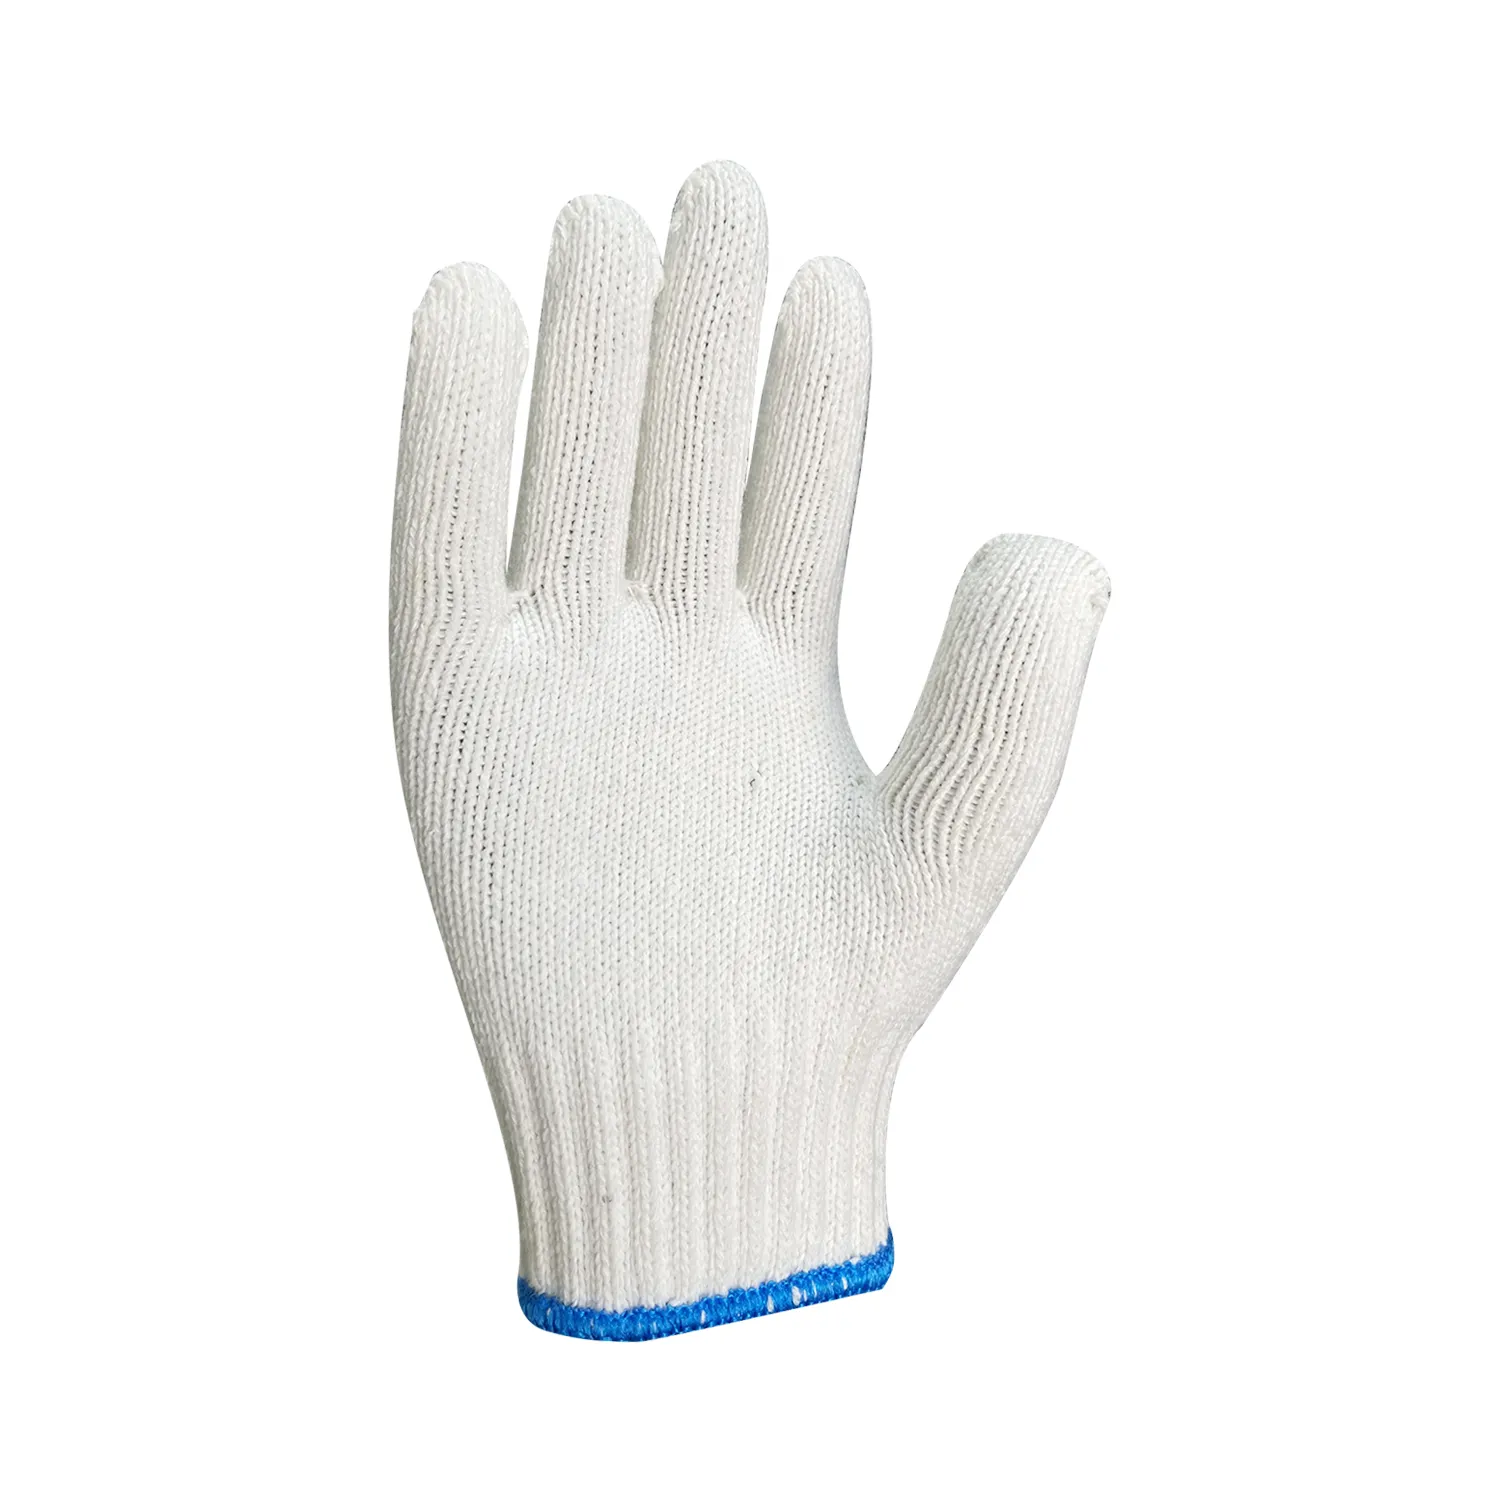 Белые защитные перчатки для работы на месте, хлопковые перчатки 600 г